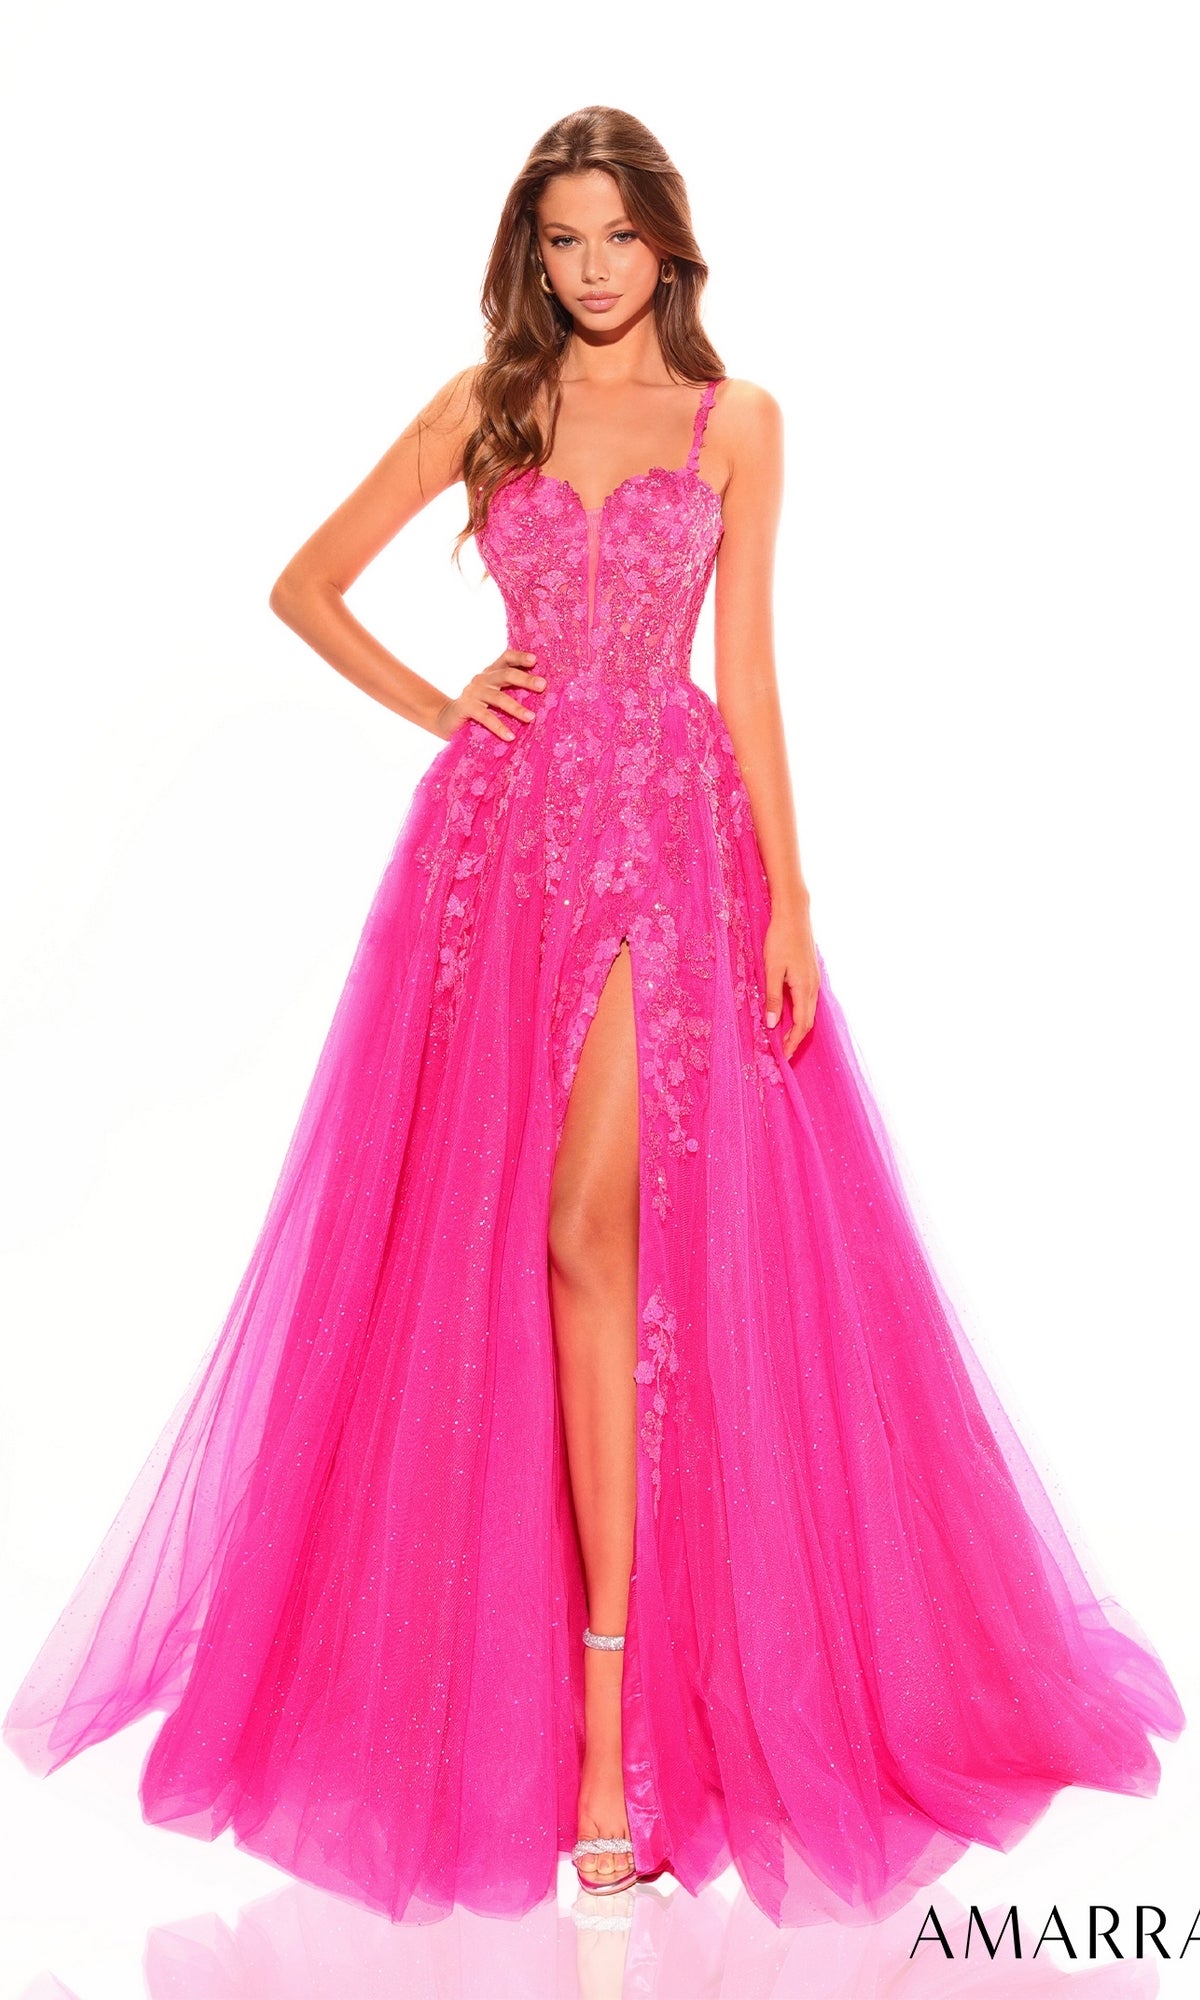 Amarra Long Prom Dress 88754